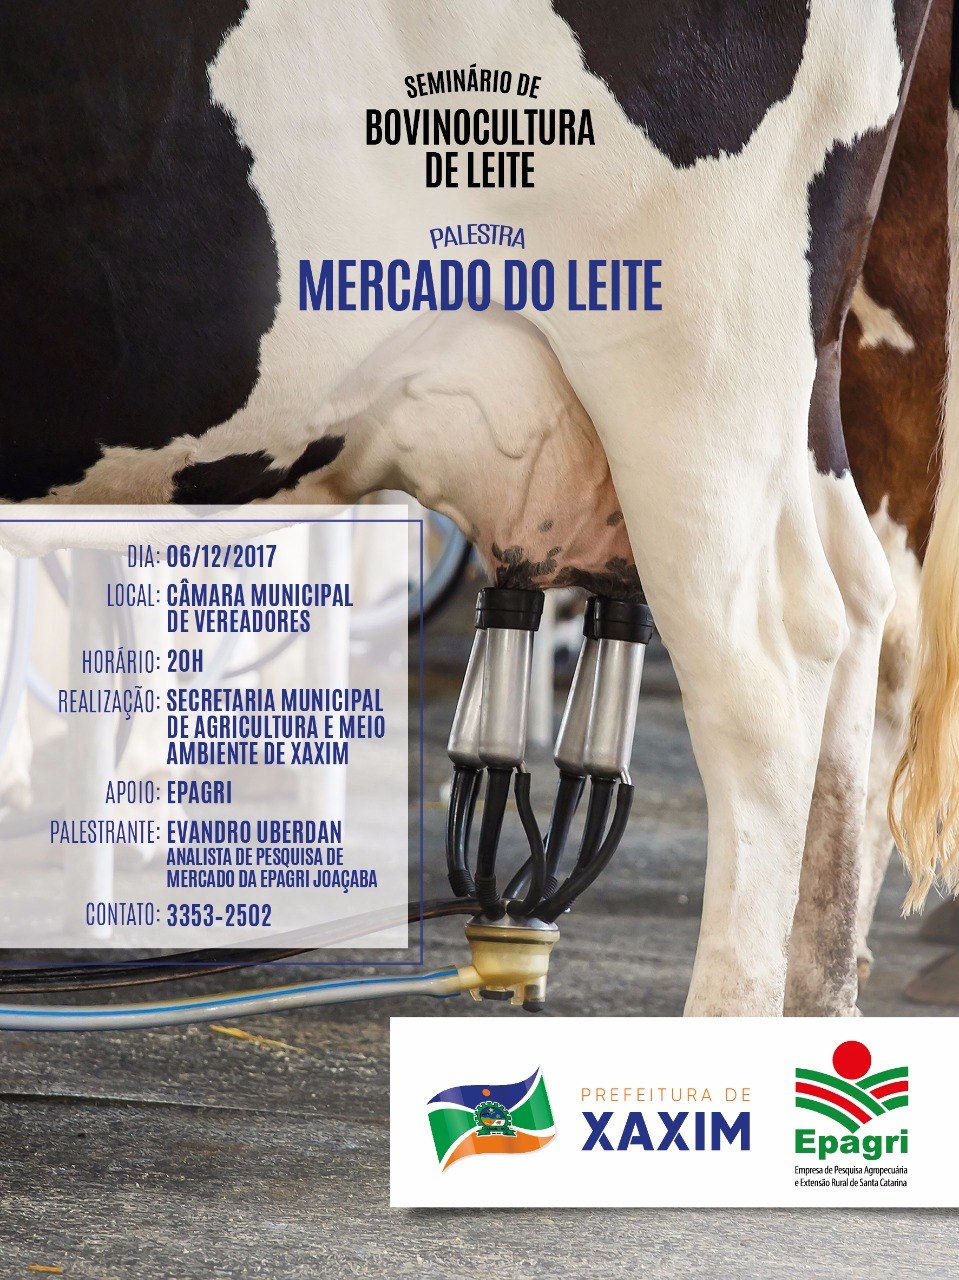 You are currently viewing Prefeitura de Xaxim e Epagri promovem Seminário de Bovinocultura de leite